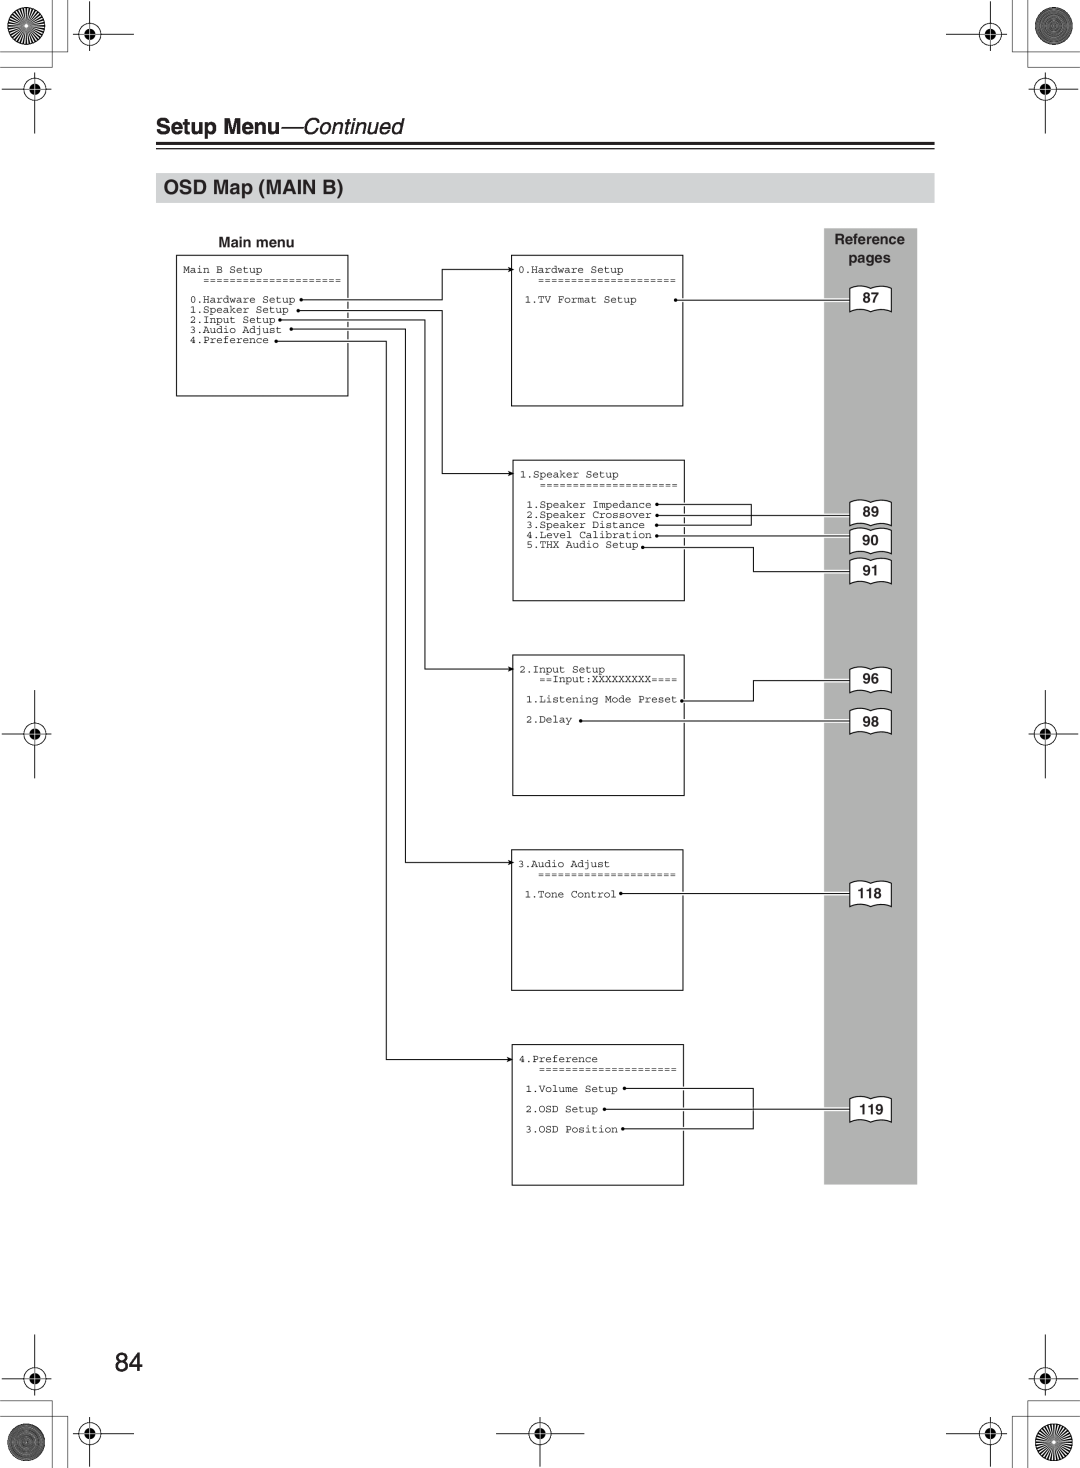 Onkyo TX-NR1000 instruction manual OSD Map MAIN B, Setup Menu—Continued, Main menu, Reference pages 87 89 90 91 96 98 